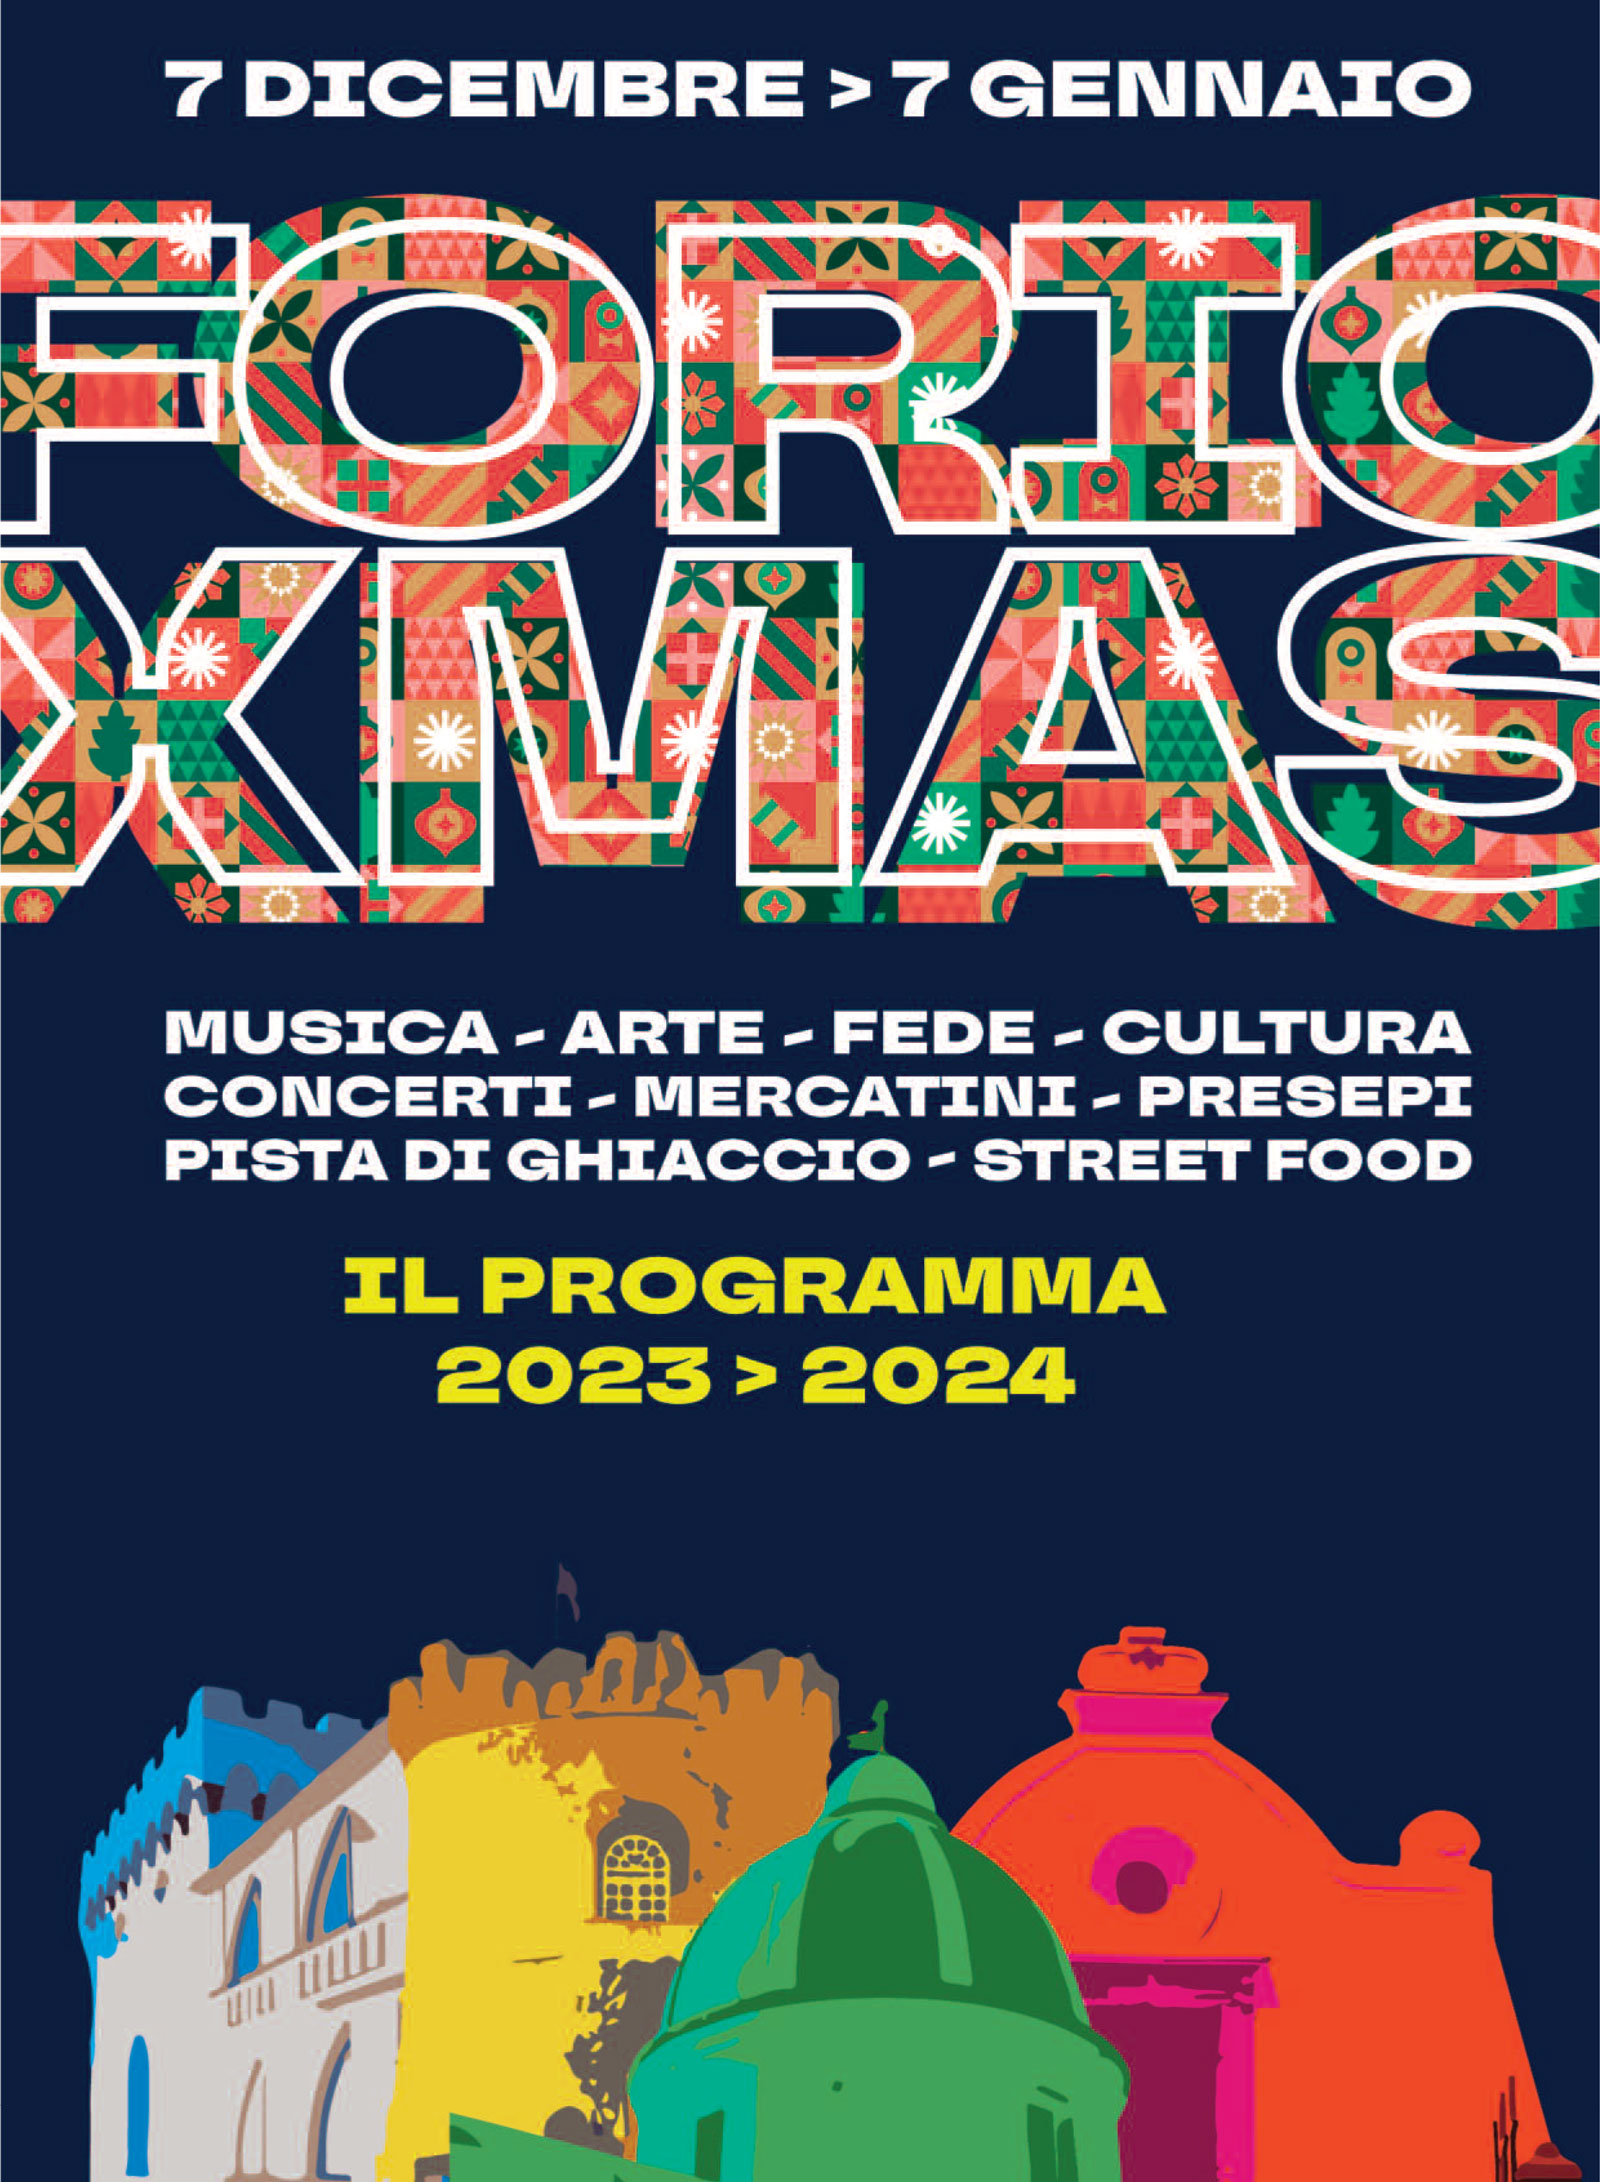 Forio Xmas 2023: San Vito Choir